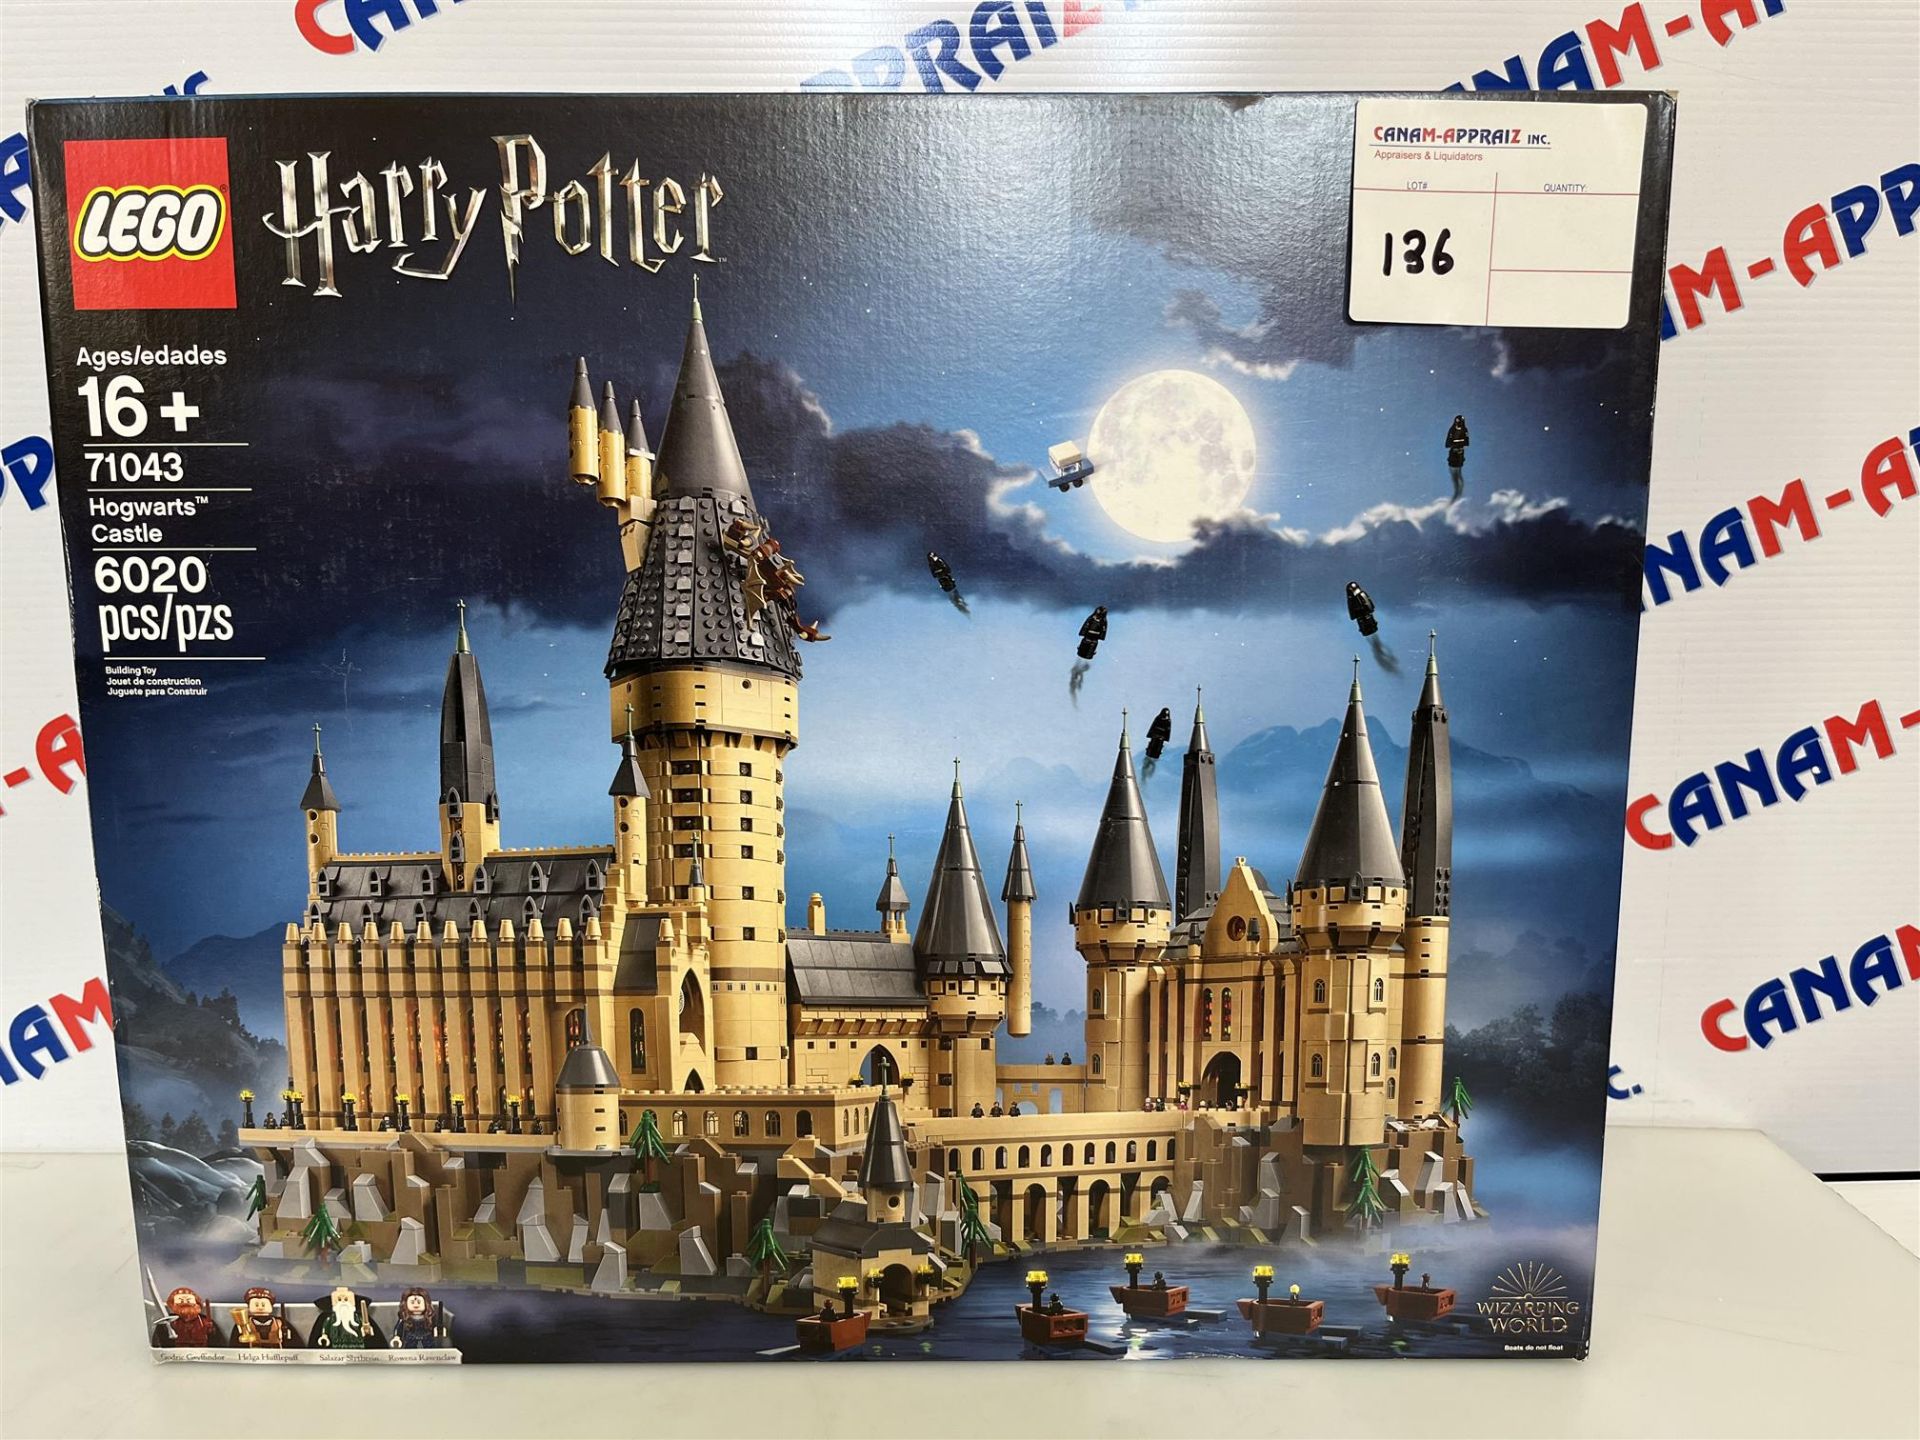 Lego Harry Potter - 71043 Hogwarts Castle - Ages 16+ - 6020 PCS